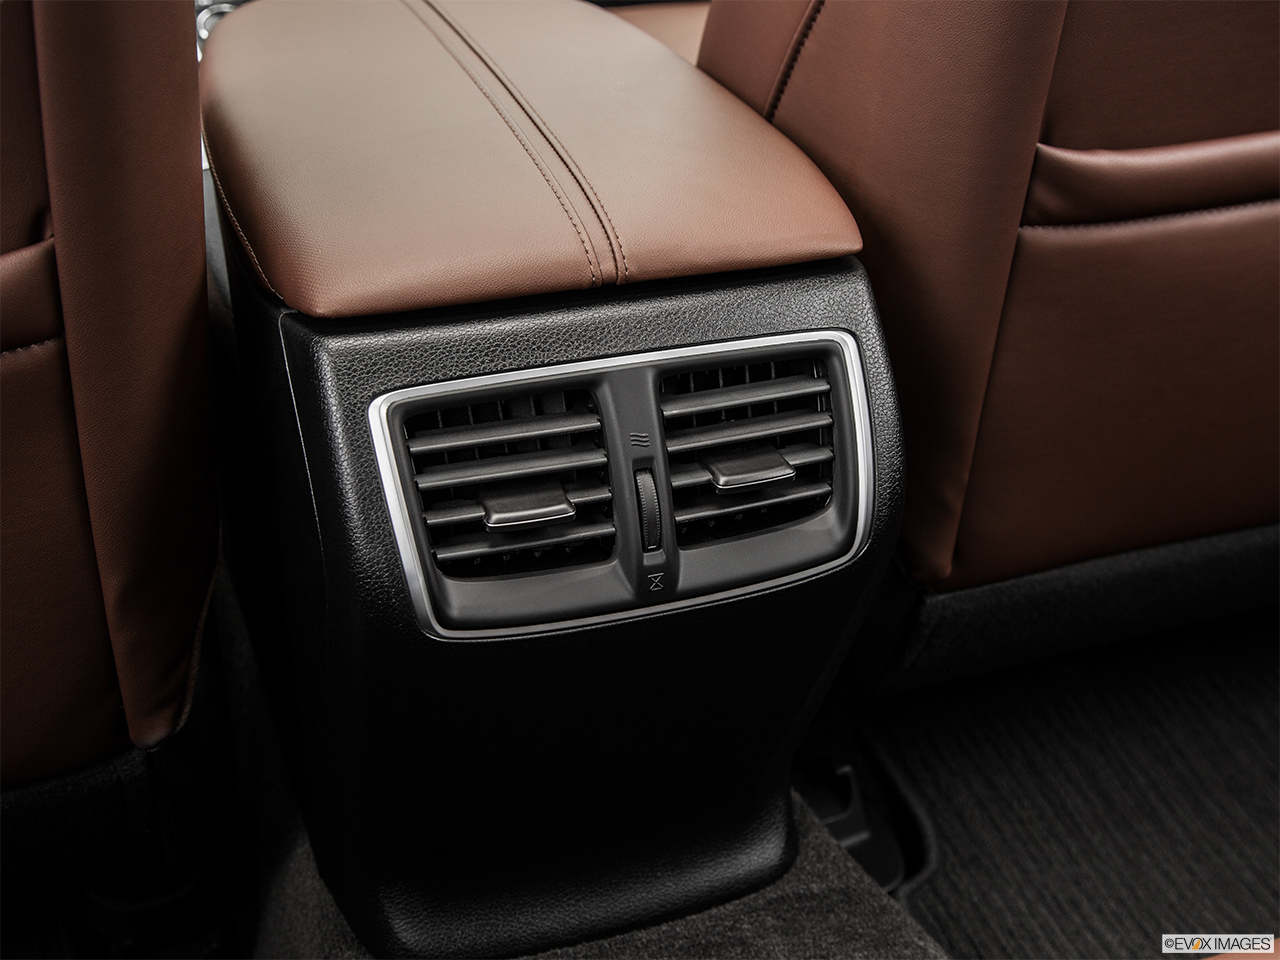 2015 Acura TLX 3.5 V-6 9-AT SH-AWD Rear A/C controls. 